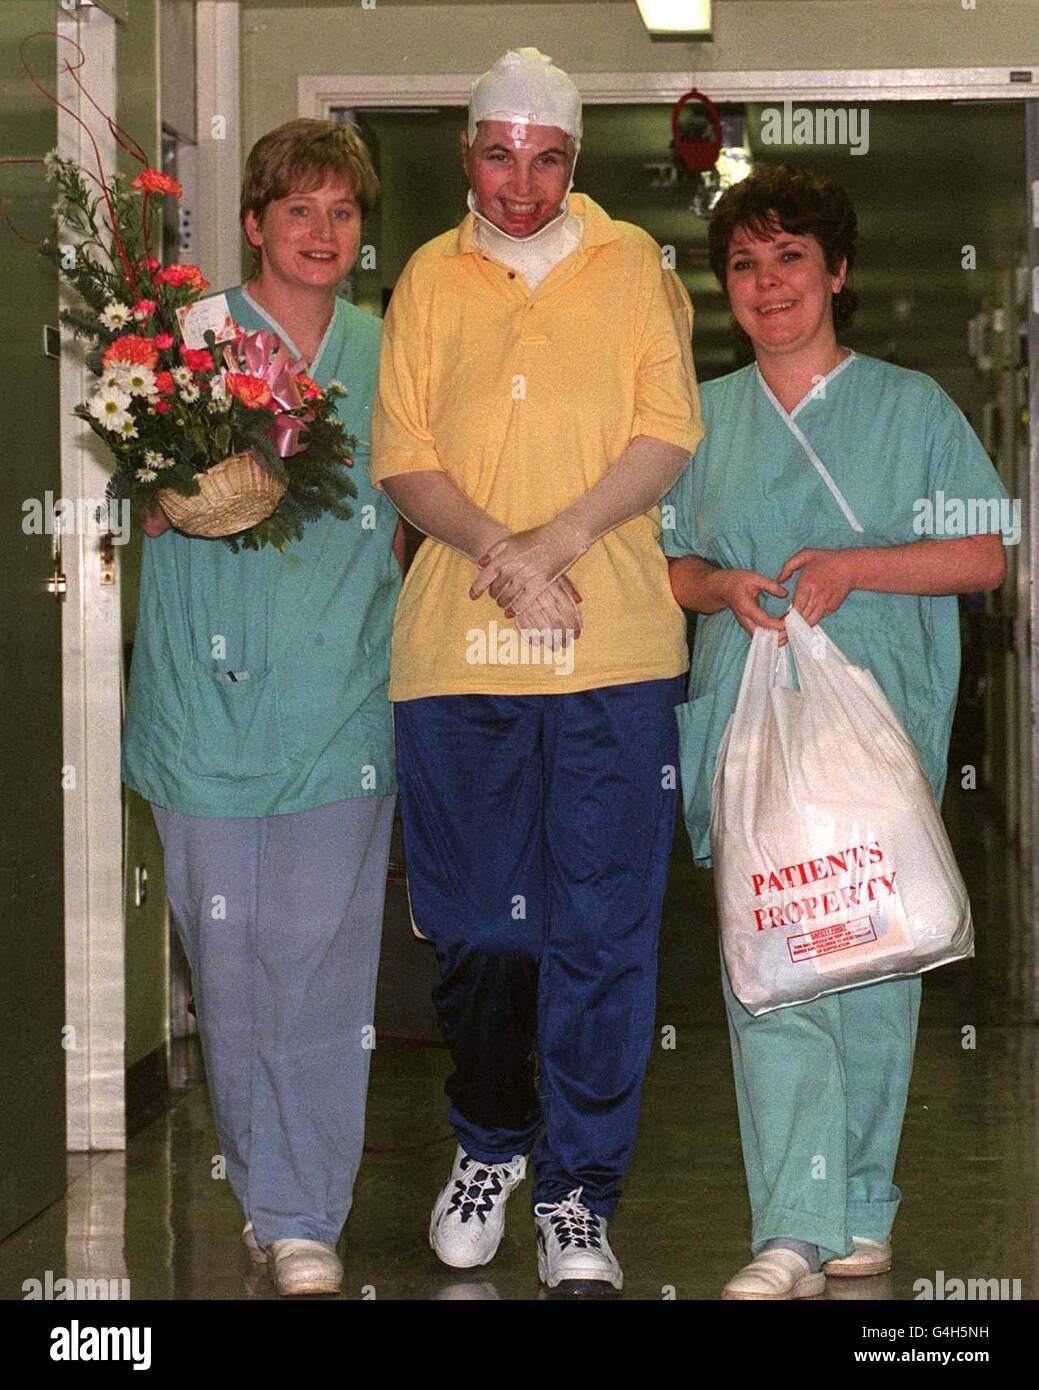 Tracey Devine (Mitte), verletzt durch die Bombenexplosion in Omagh, Nordirland, verlässt das Royal Victoria Hospital in Belfast mit den Krankenschwestern Tina Cox (L) und Debbie Patton. Tracey, die ihr Baby bei der Explosion verloren hatte, war die letzte der Verletzten, die das Krankenhaus verließ. Stockfoto